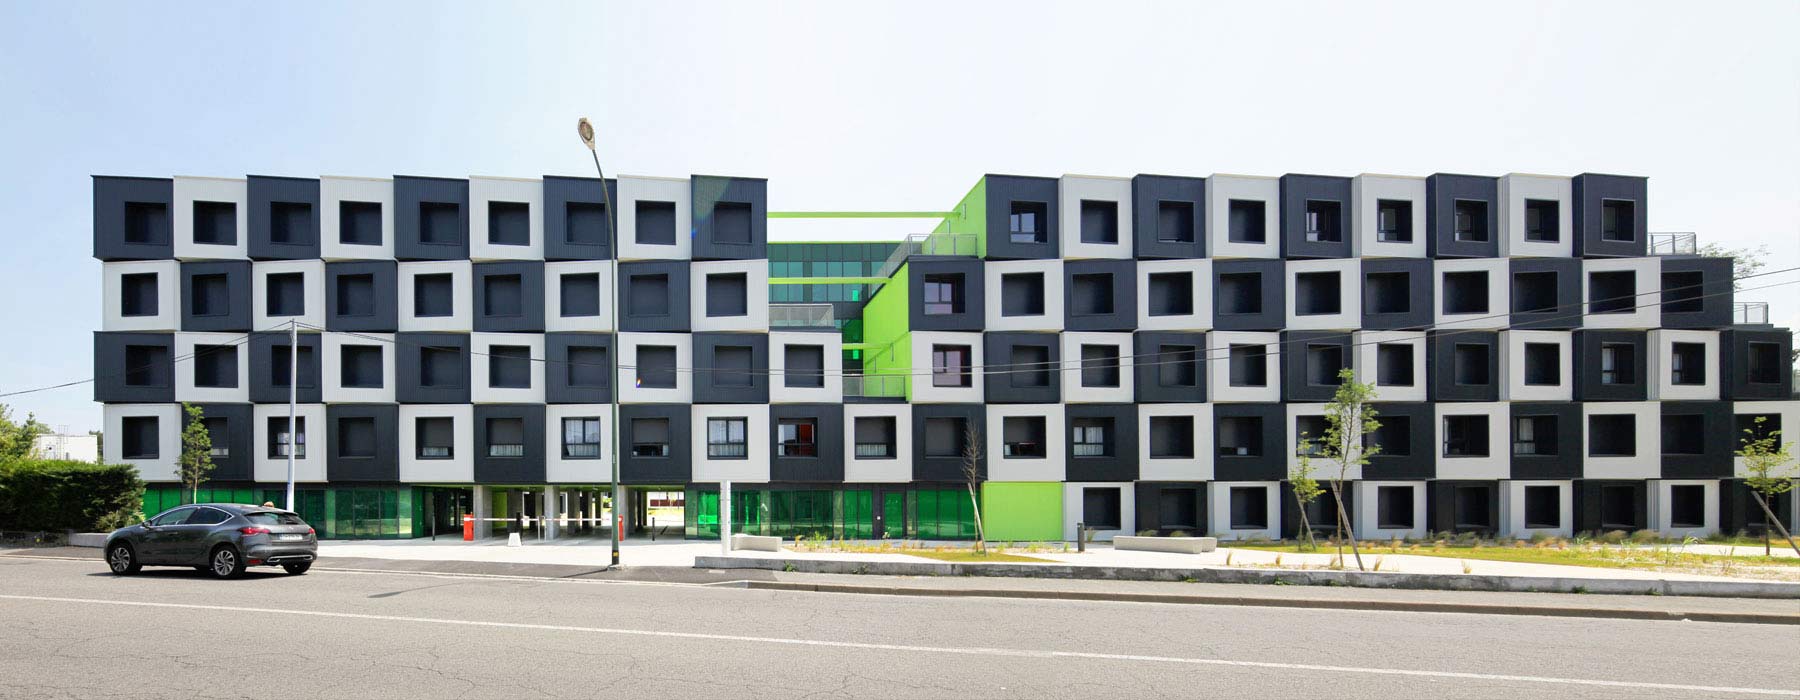 compacthabit innovative student housing design build dfma conception realisation pau